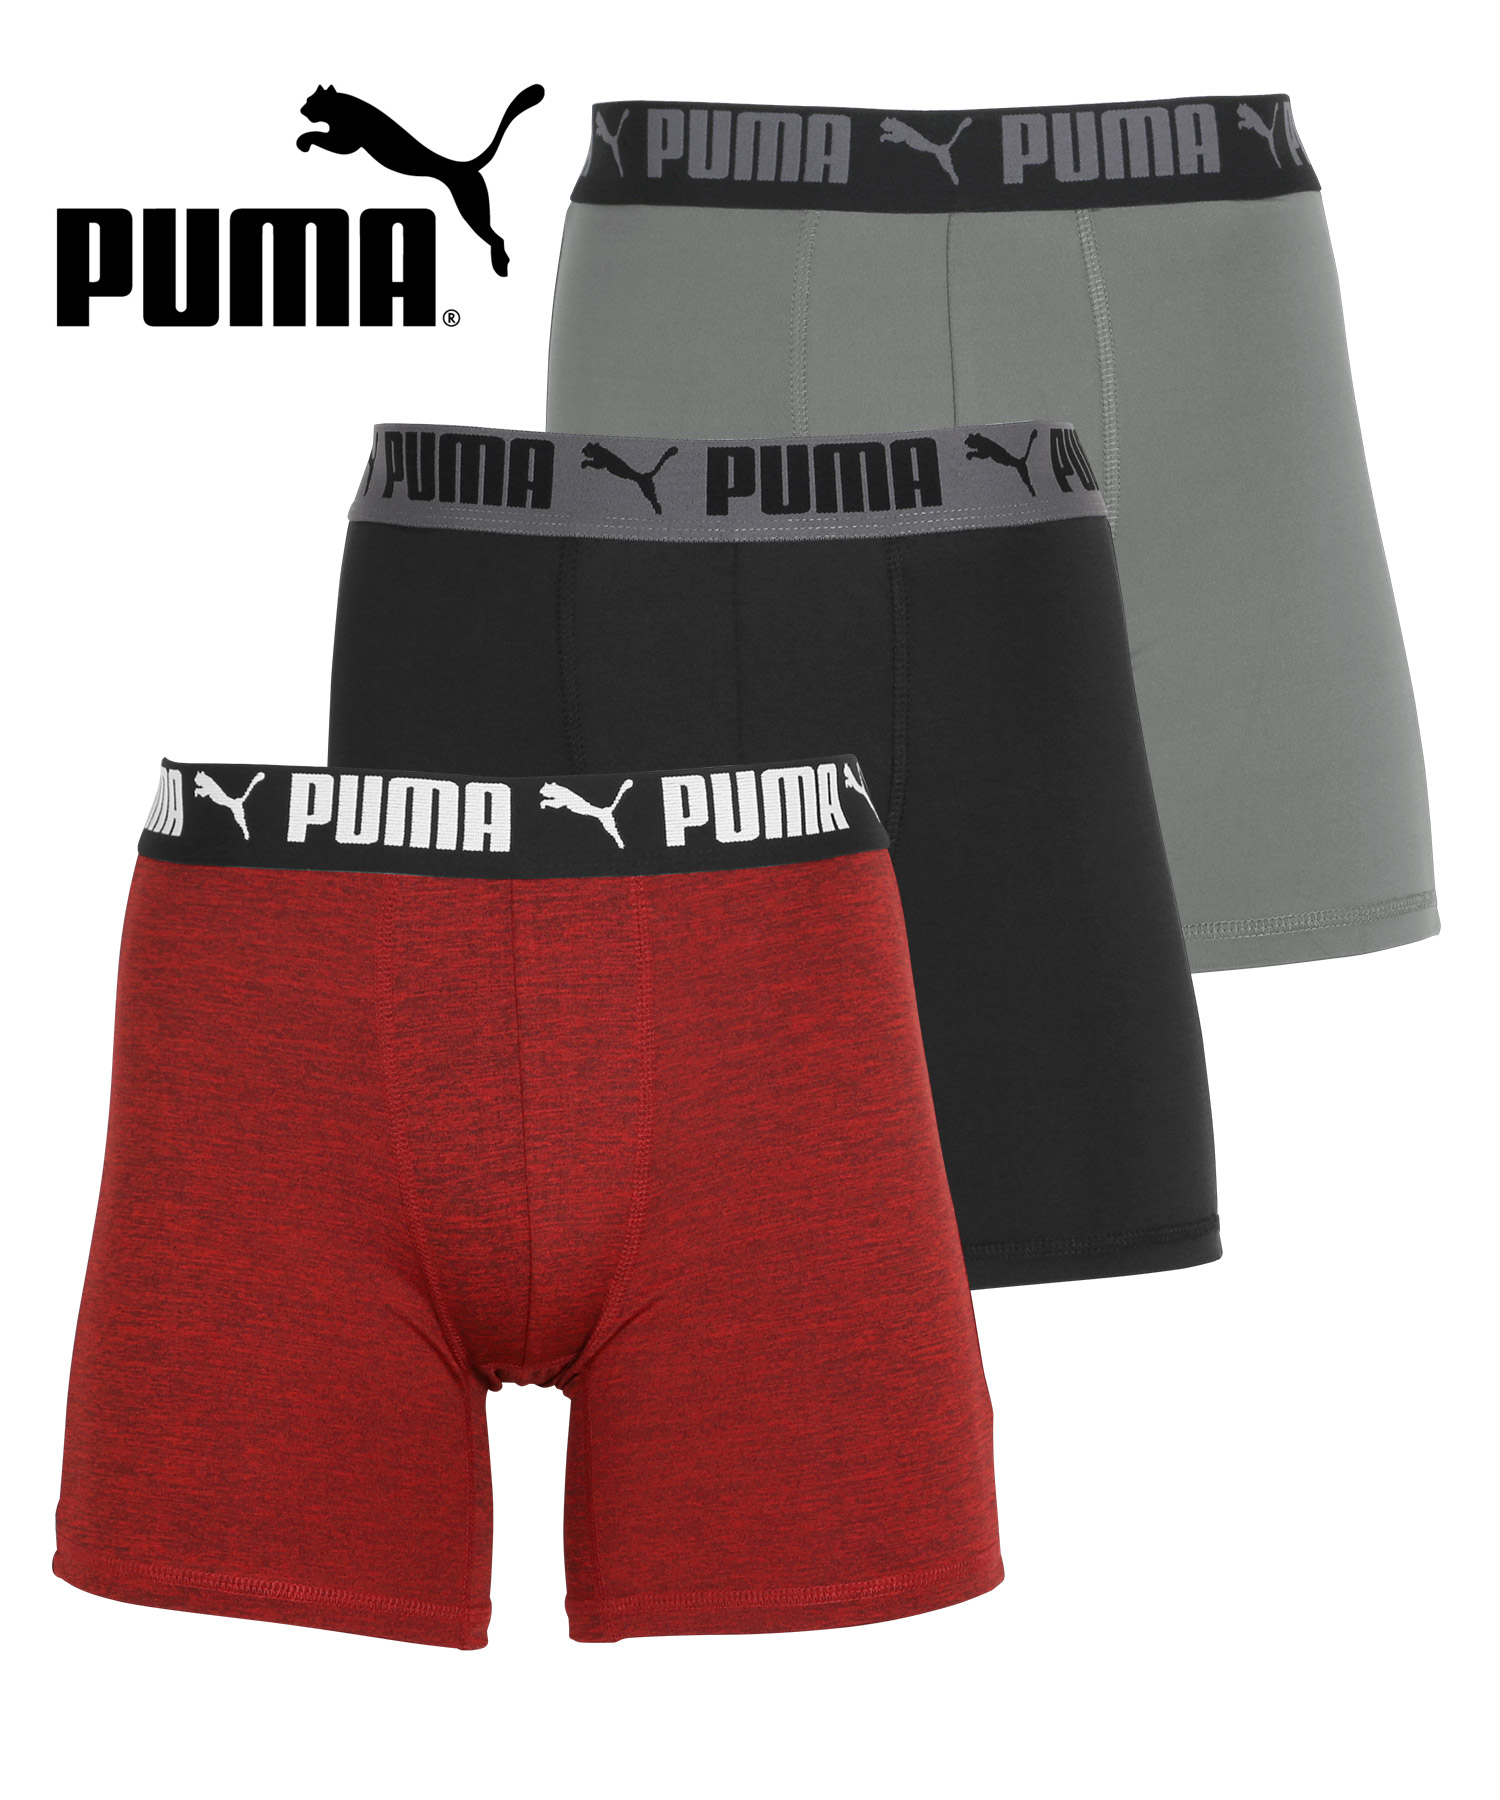 プーマ PUMA 3枚セット ボクサーパンツ メンズ 下着 アンダーウェア ツルツル 速乾 トレーニ...